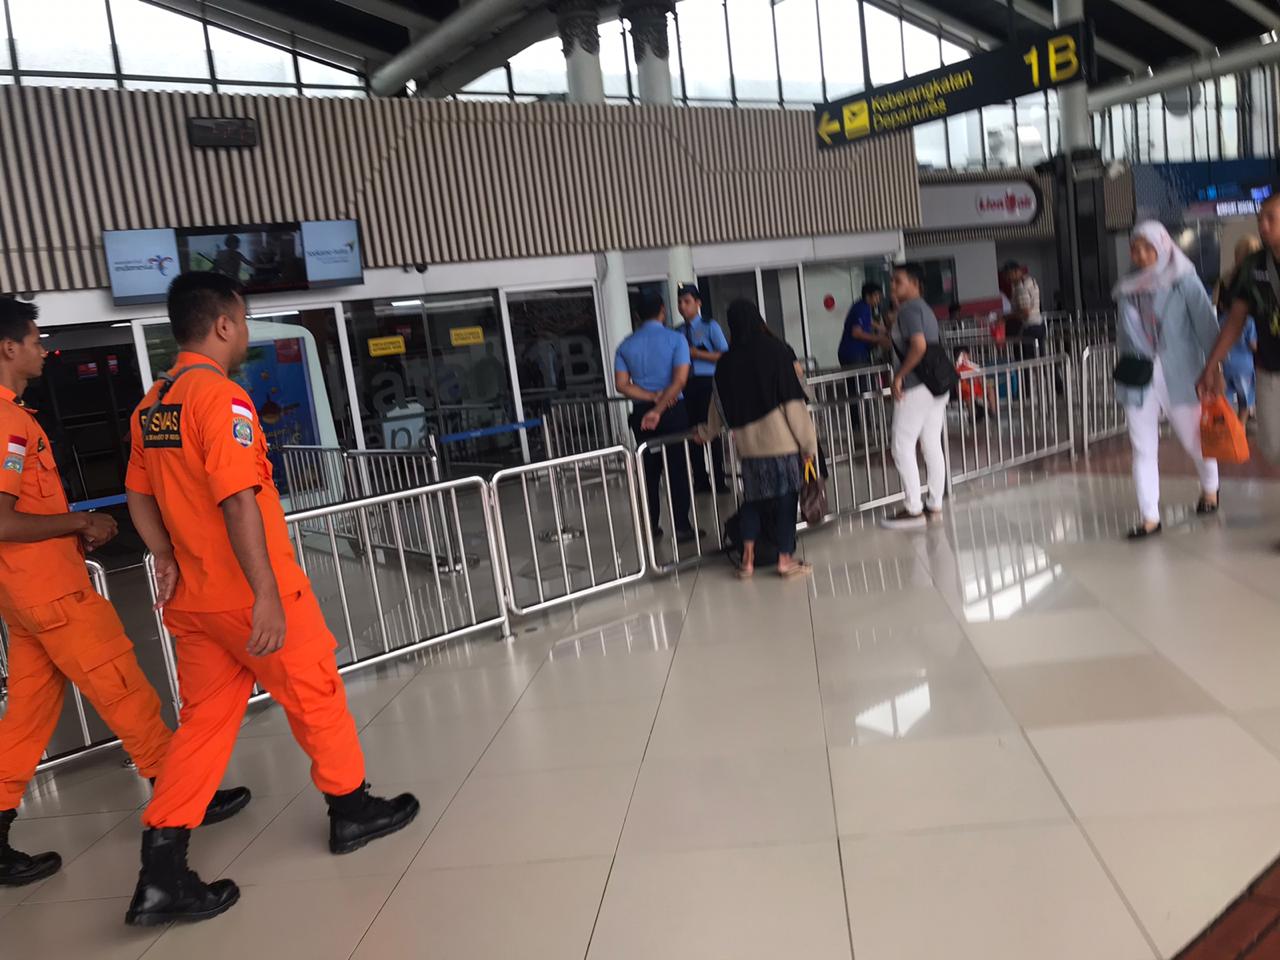 Tampak Personil Basarnas (pakaian oranye) saat patroli di area Bandara Soekarno-Hatta.